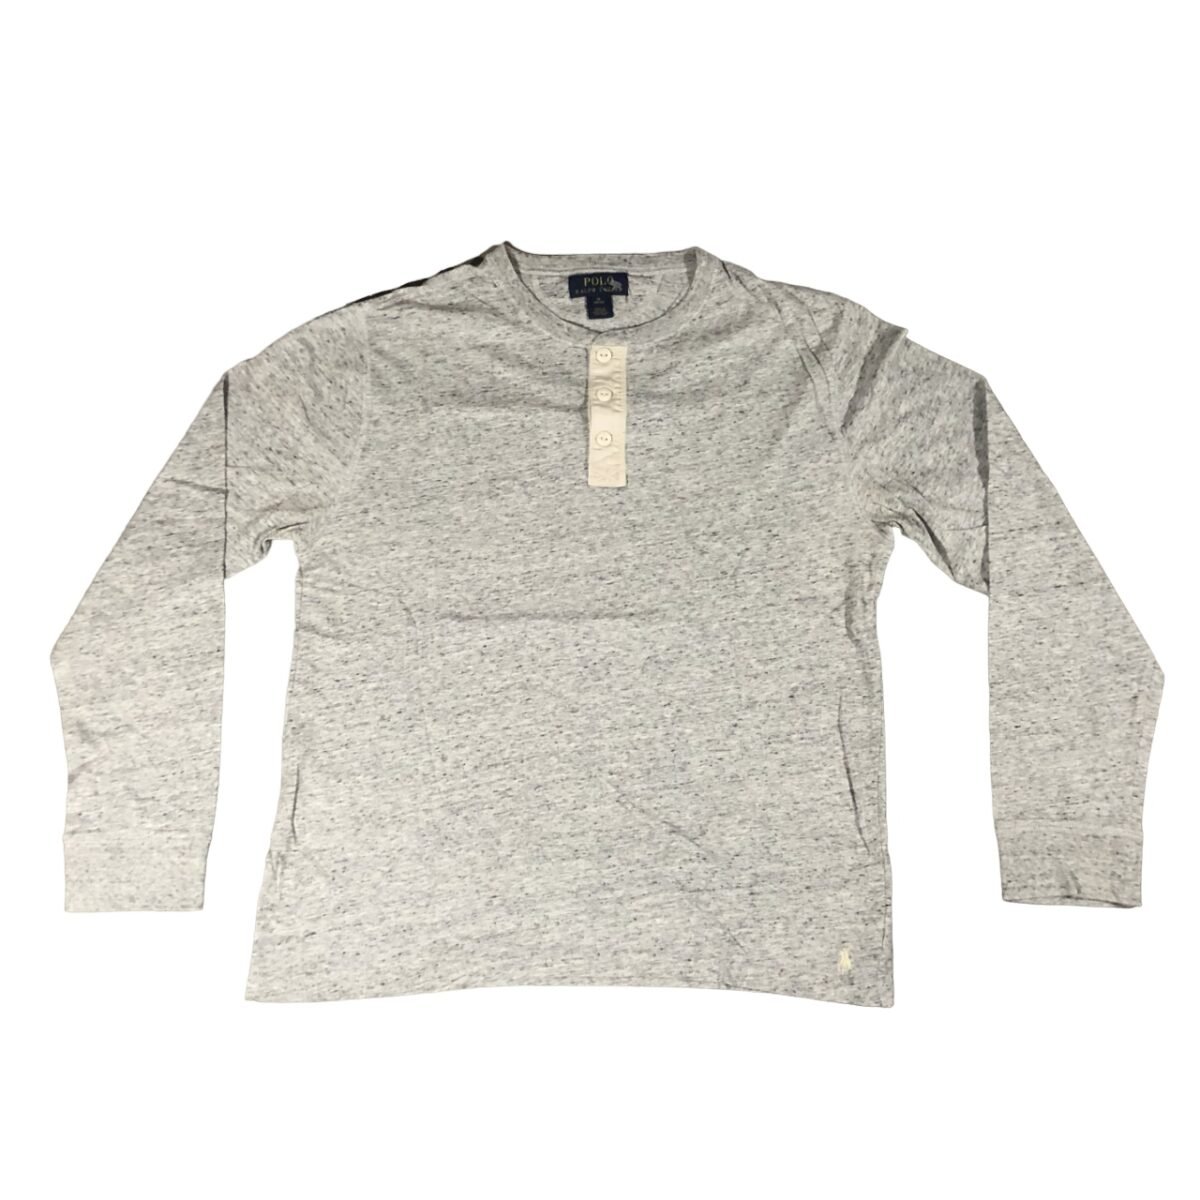 T-shirt longsleeve button collar Polo Ralph Lauren grey